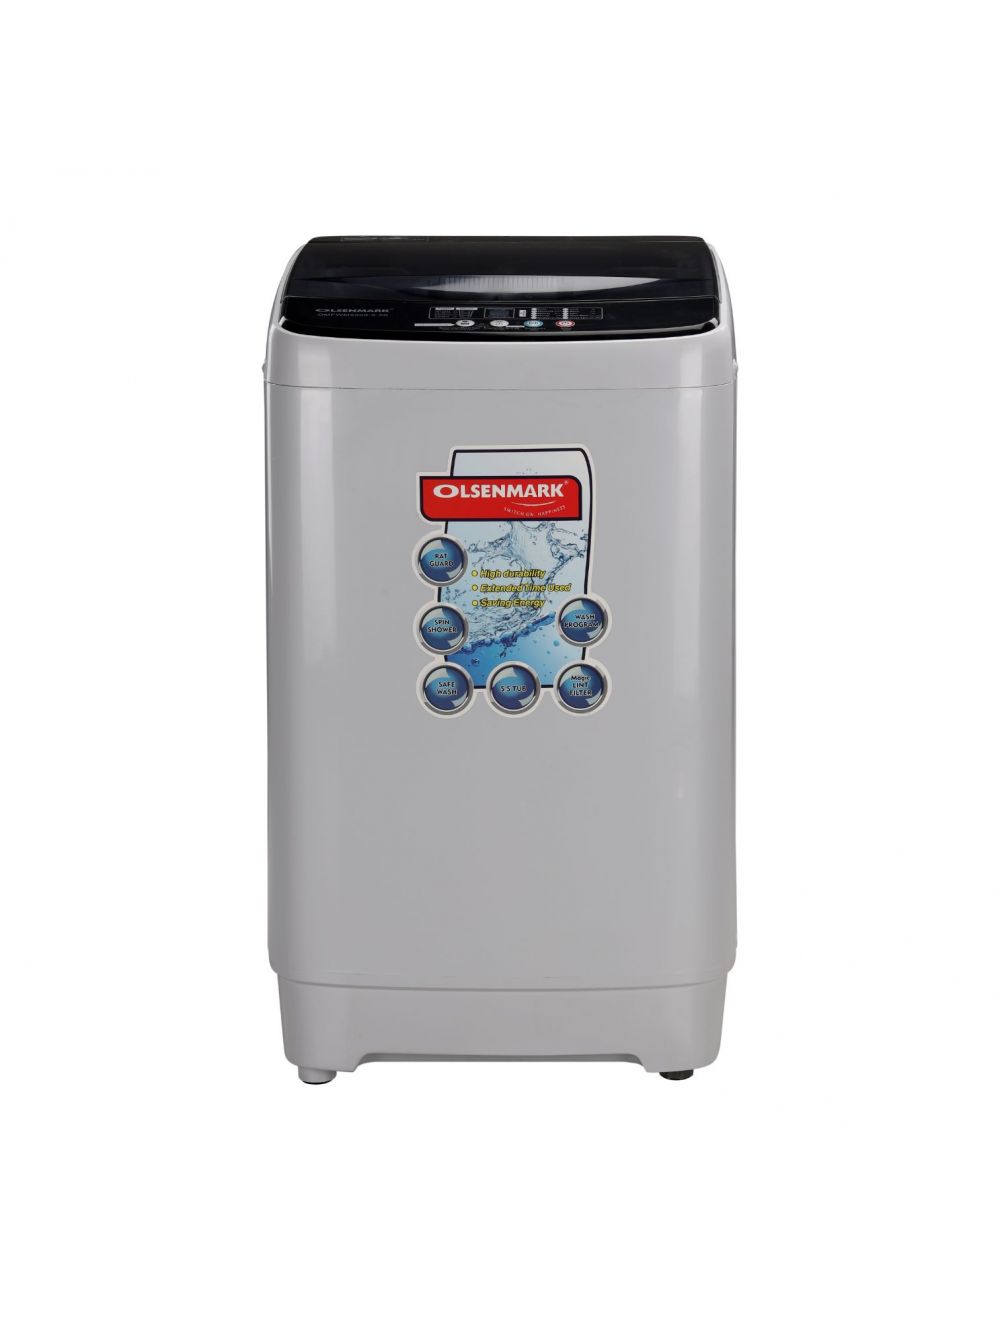 Olsenmark Fully Automatic Washing Machine, 7KG